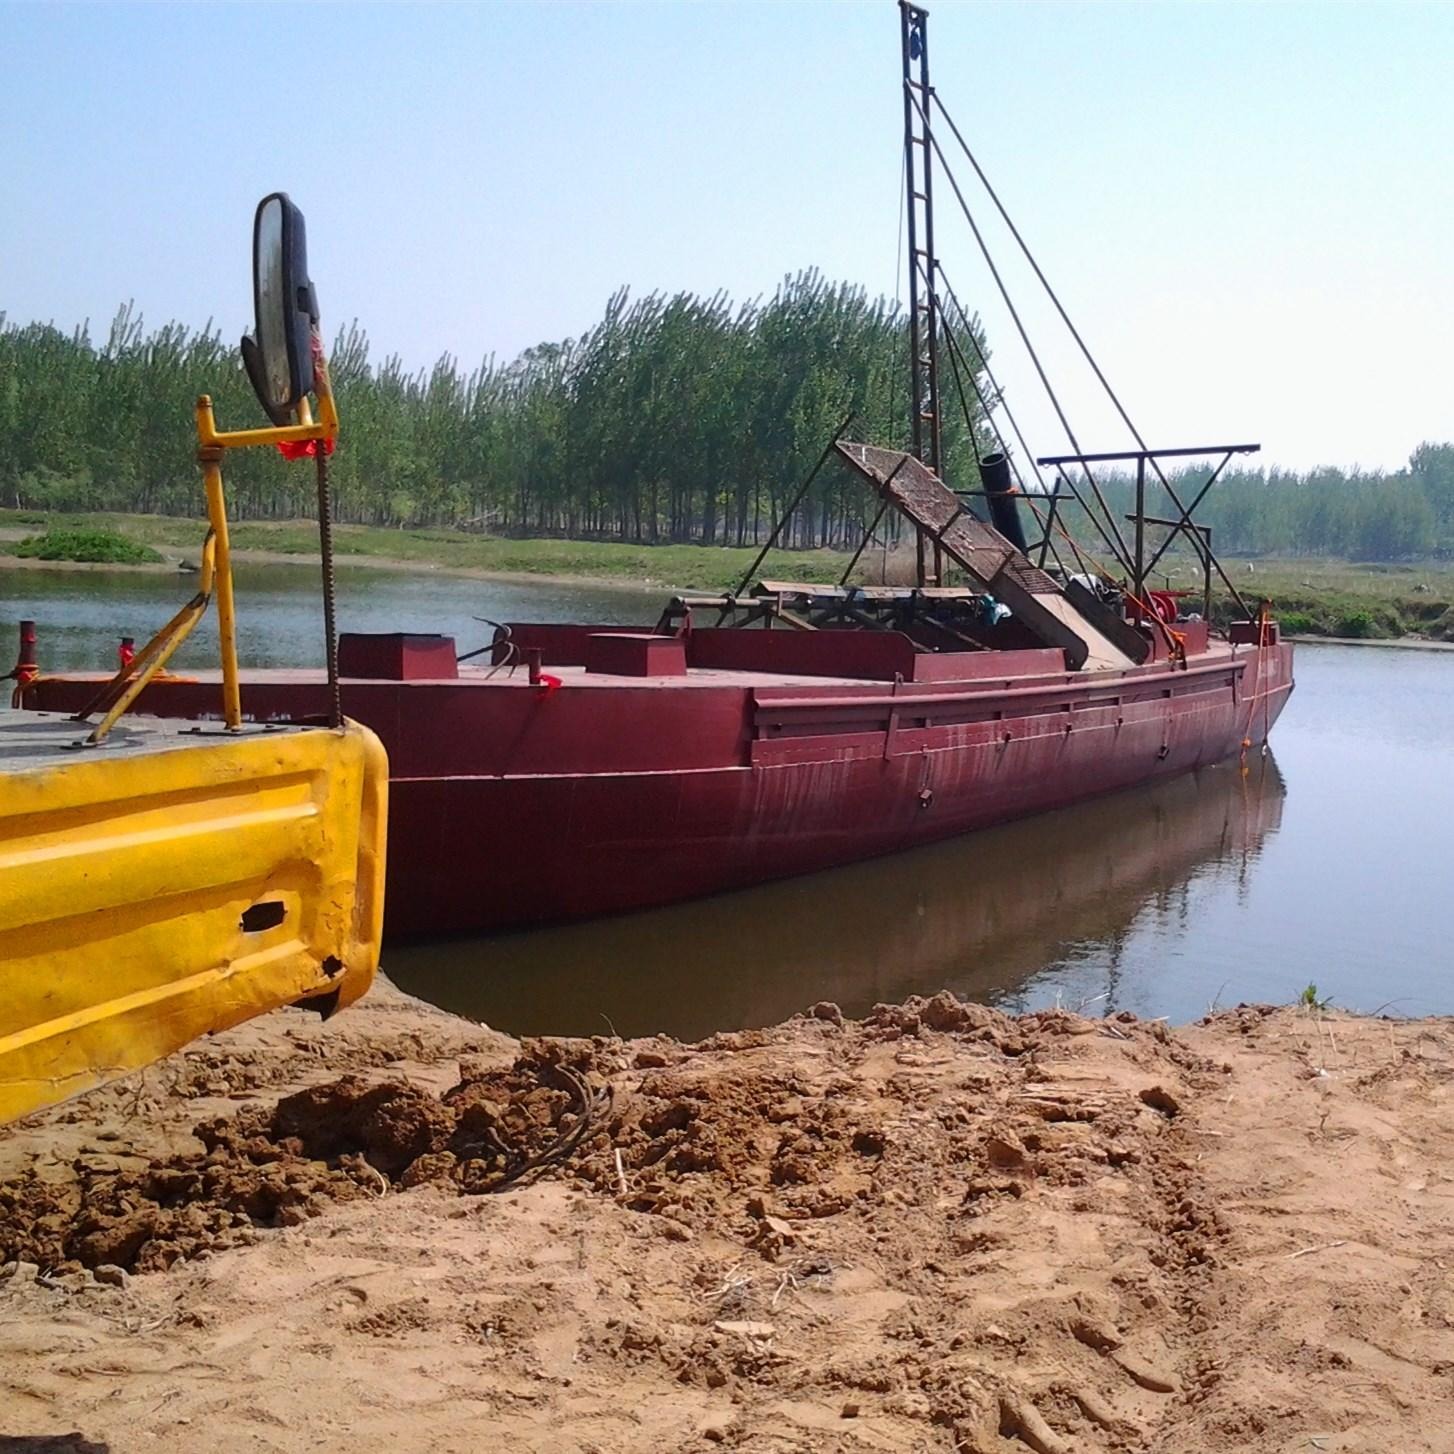 专业制造抽砂船   割边船厂家   河道抽沙设备  洗沙机   供应商鑫恒环保设备